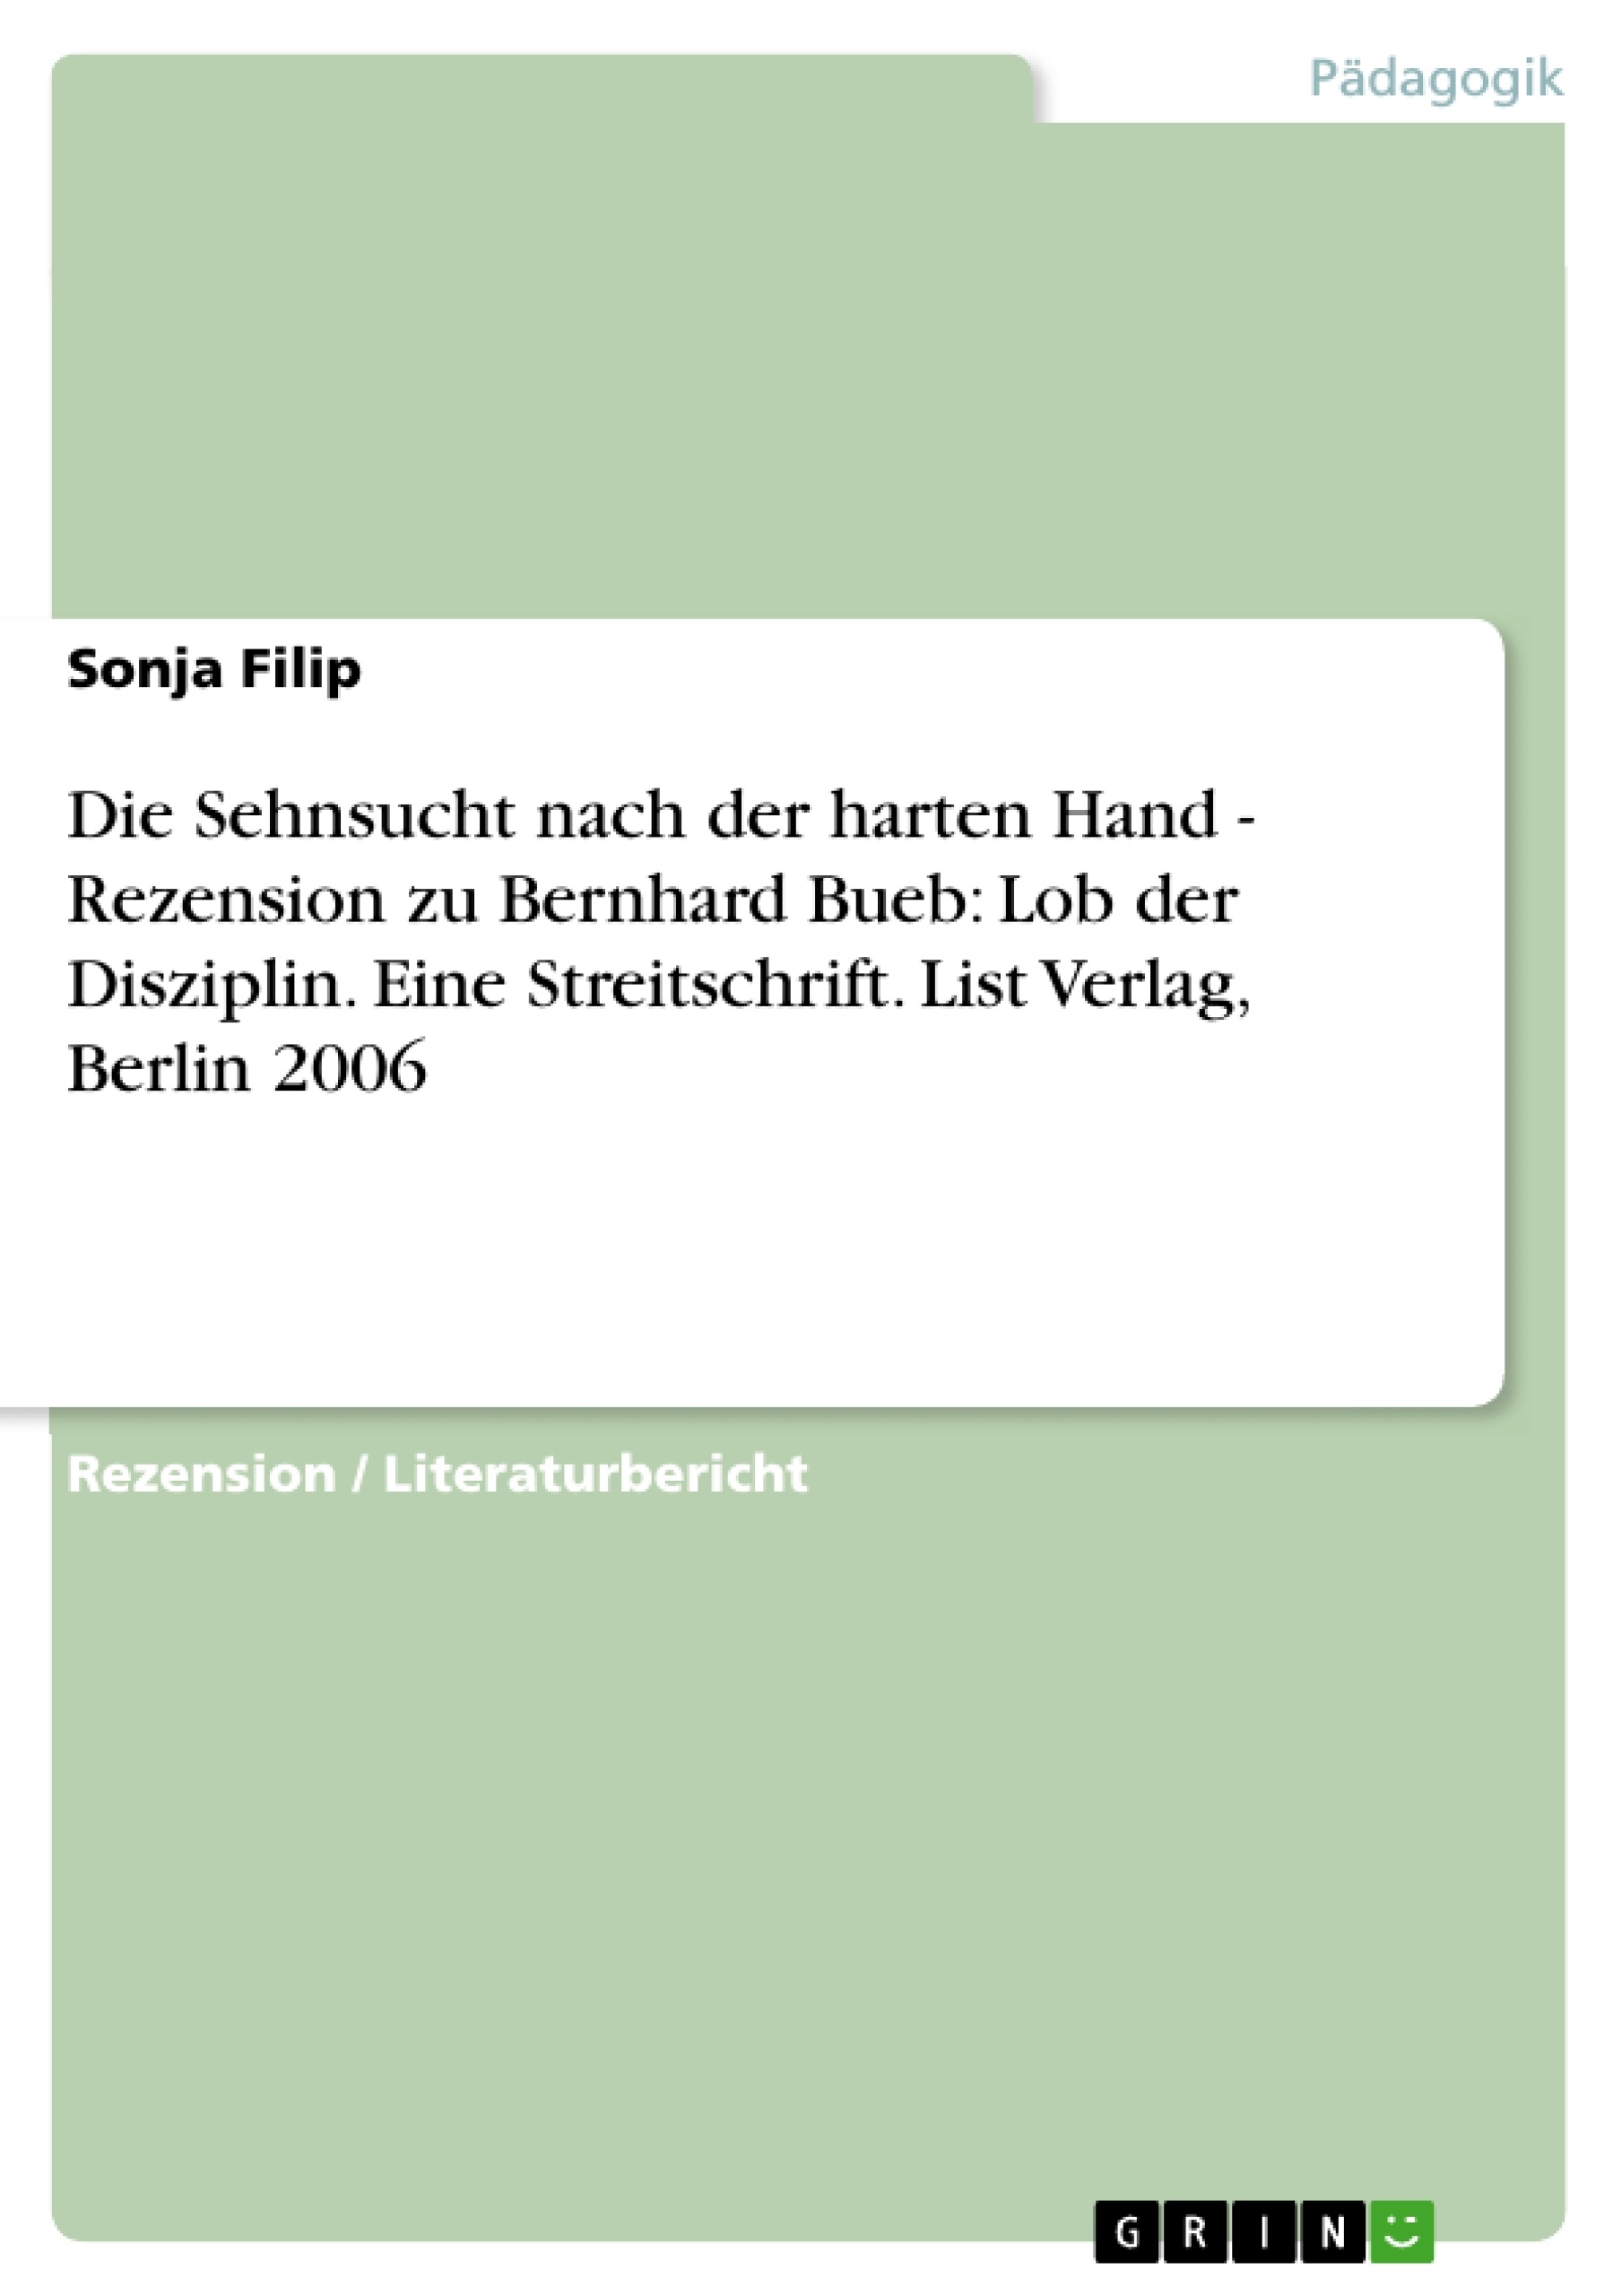 Titel: Die Sehnsucht nach der harten Hand - Rezension zu Bernhard Bueb: Lob der Disziplin. Eine Streitschrift. List Verlag, Berlin 2006 